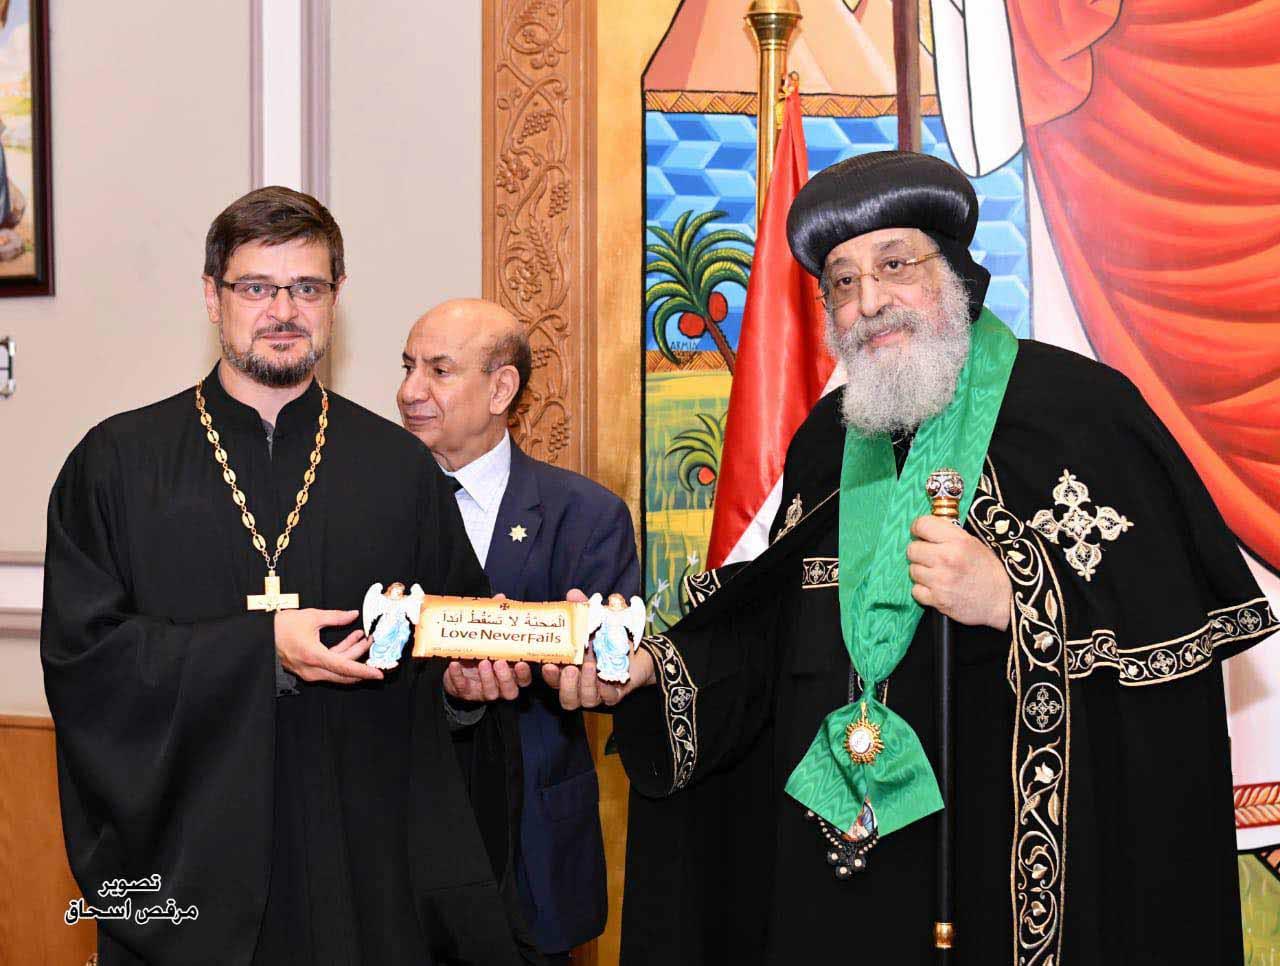 الكنيسة الروسية تمنح البابا تواضروس وسام المجد والكرامة